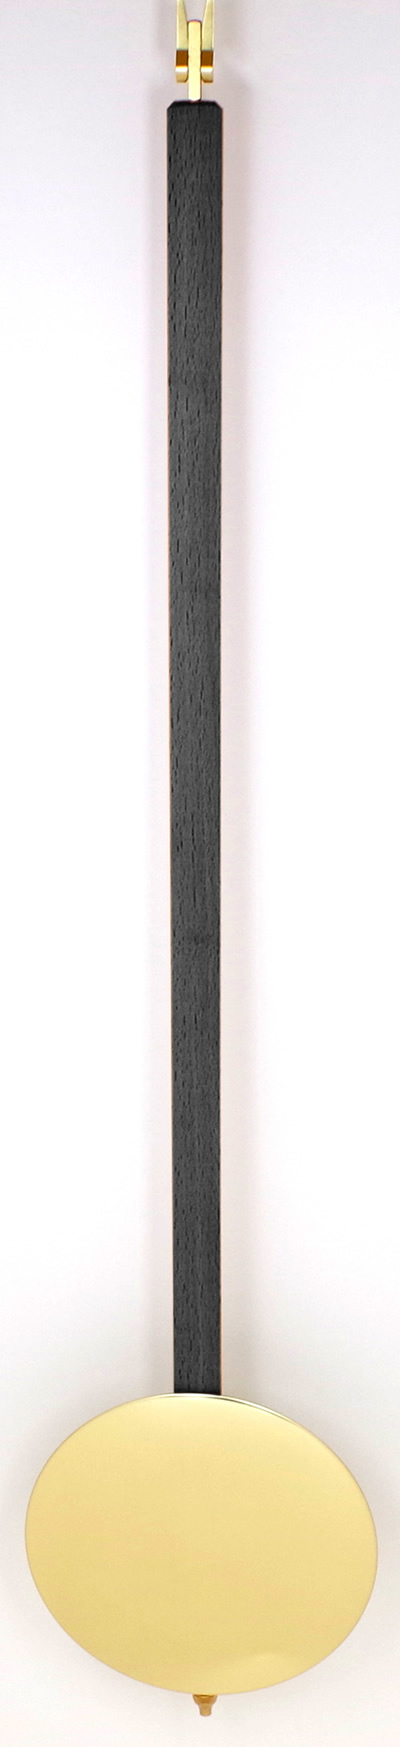 Pendulum 086Black: Kieninger 116cm x 165mm black lacquered timber Pendulum.